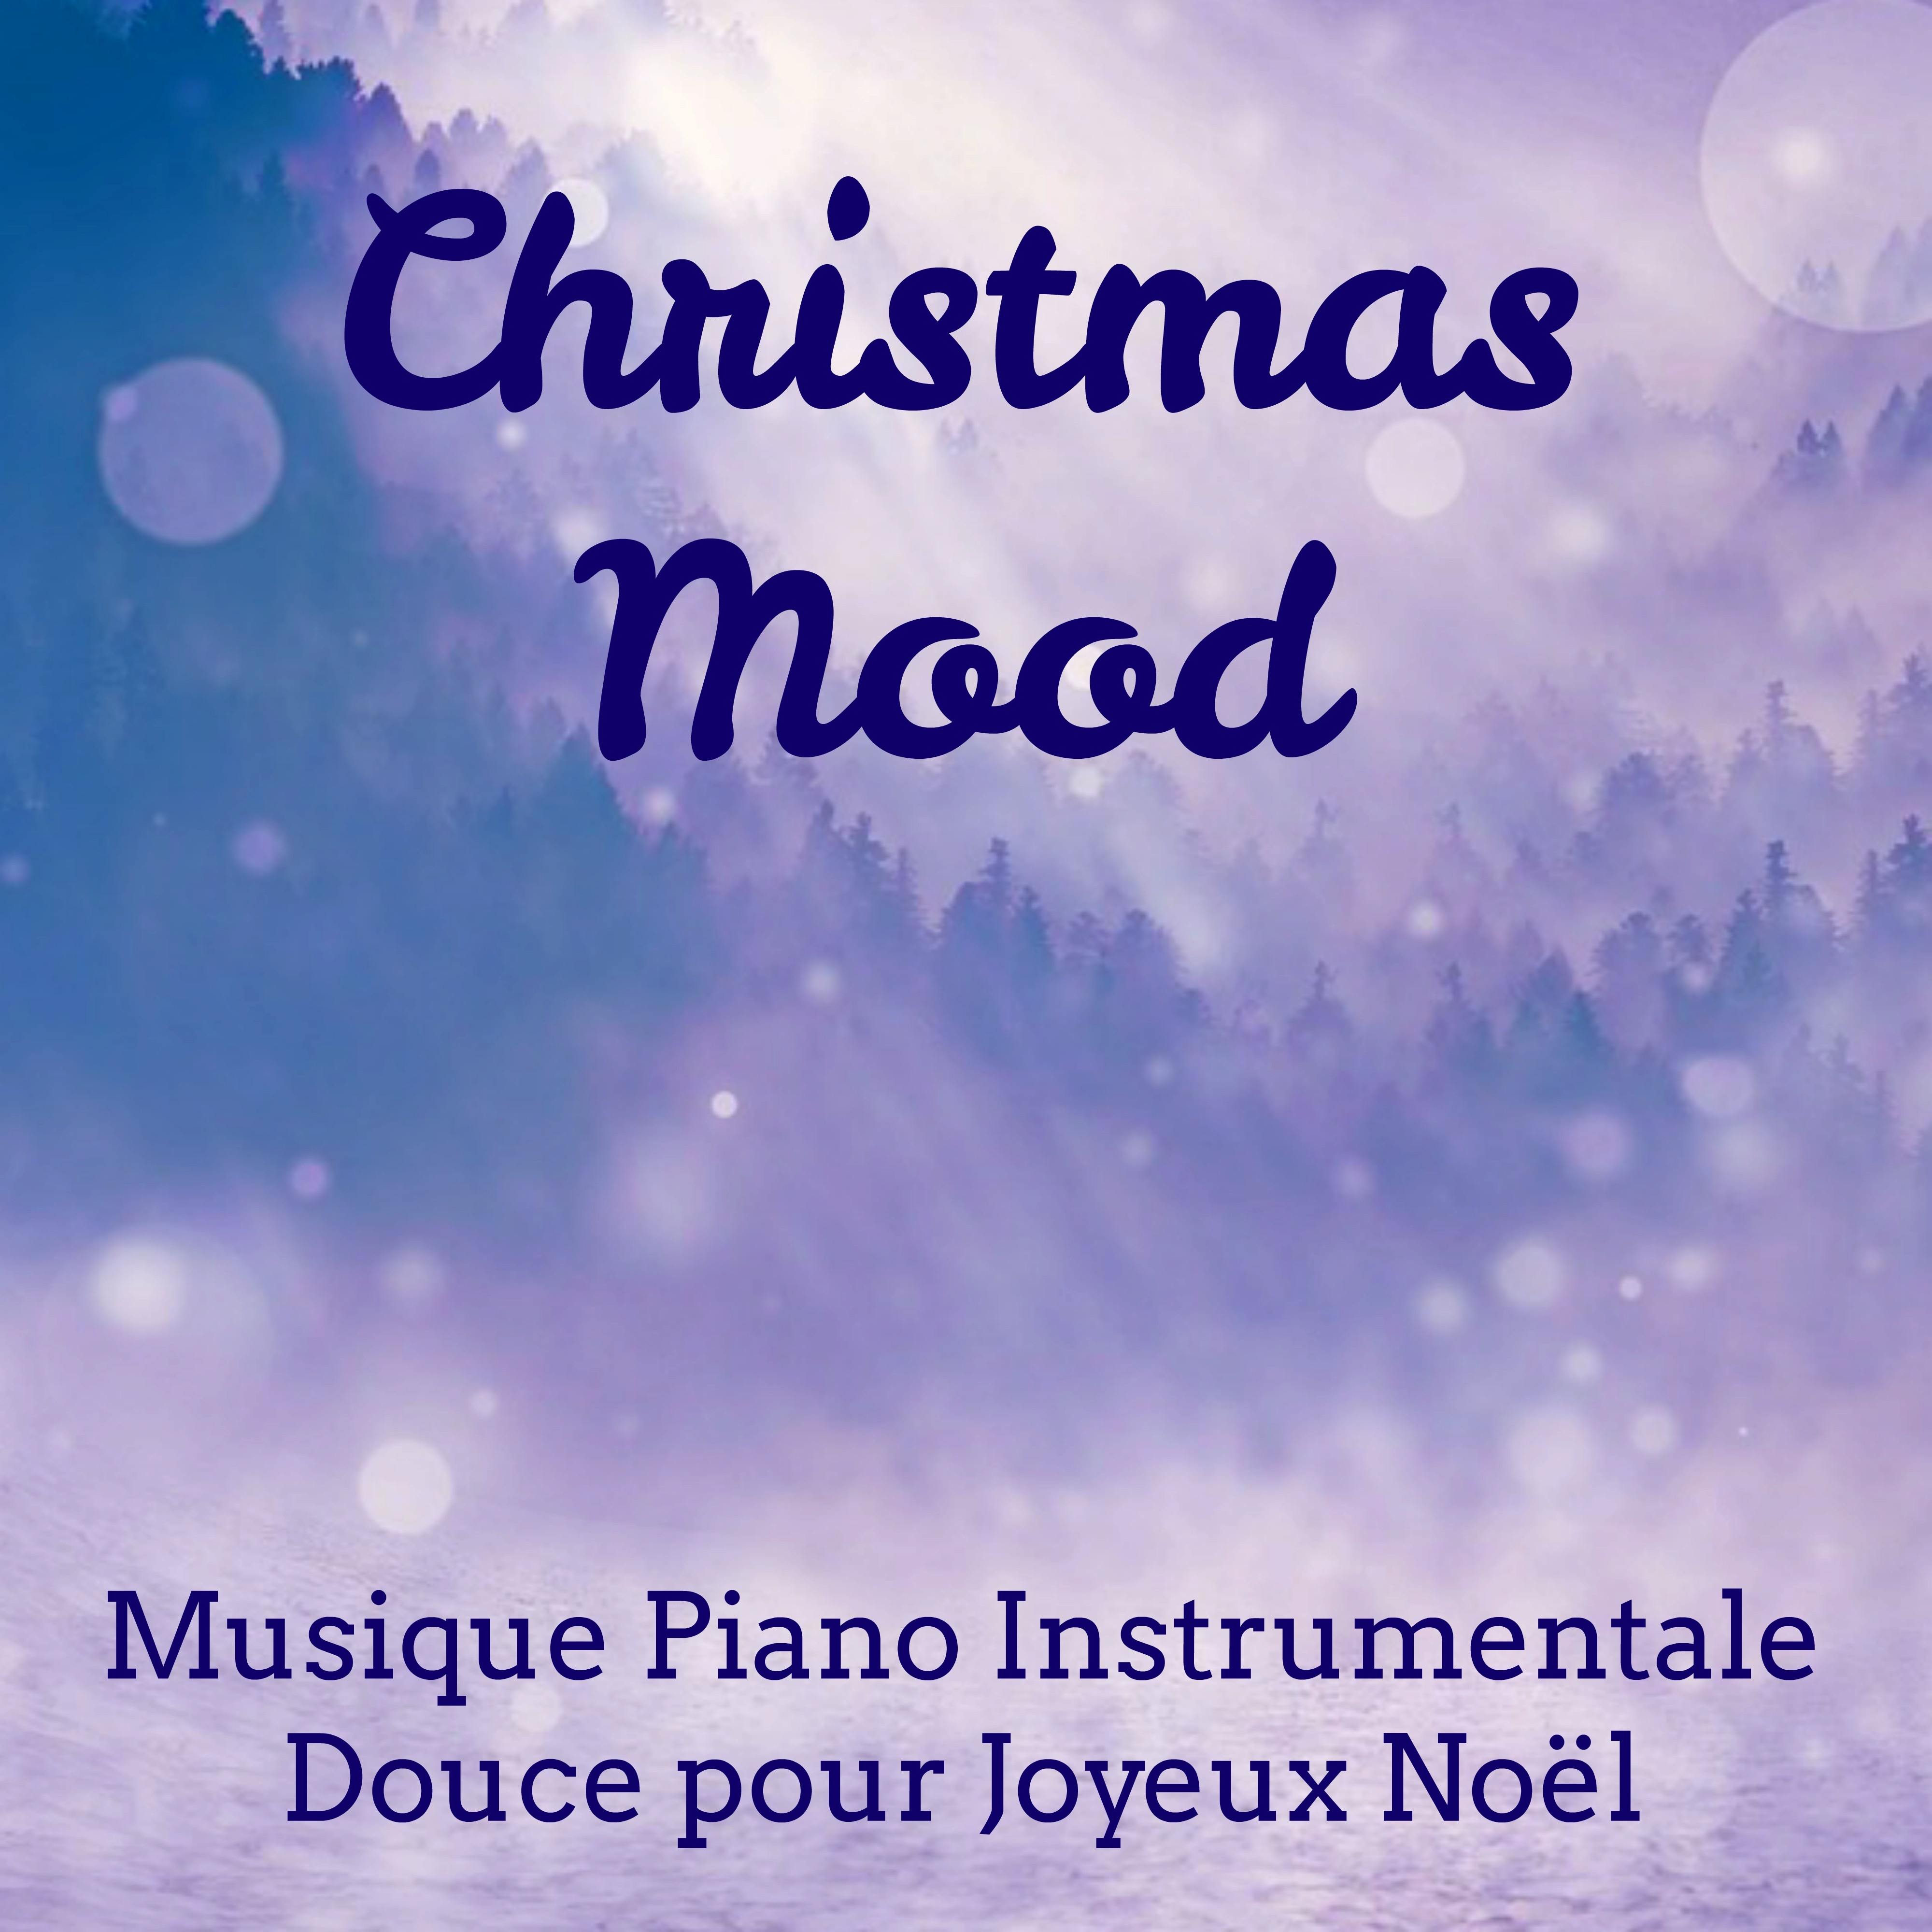 Christmas Mood  Musique Piano Instrumentale Douce pour Me ditation Quotidienne Joyeux No l Fais de Beaux R ves con Sons de la Nature Relaxants New Age